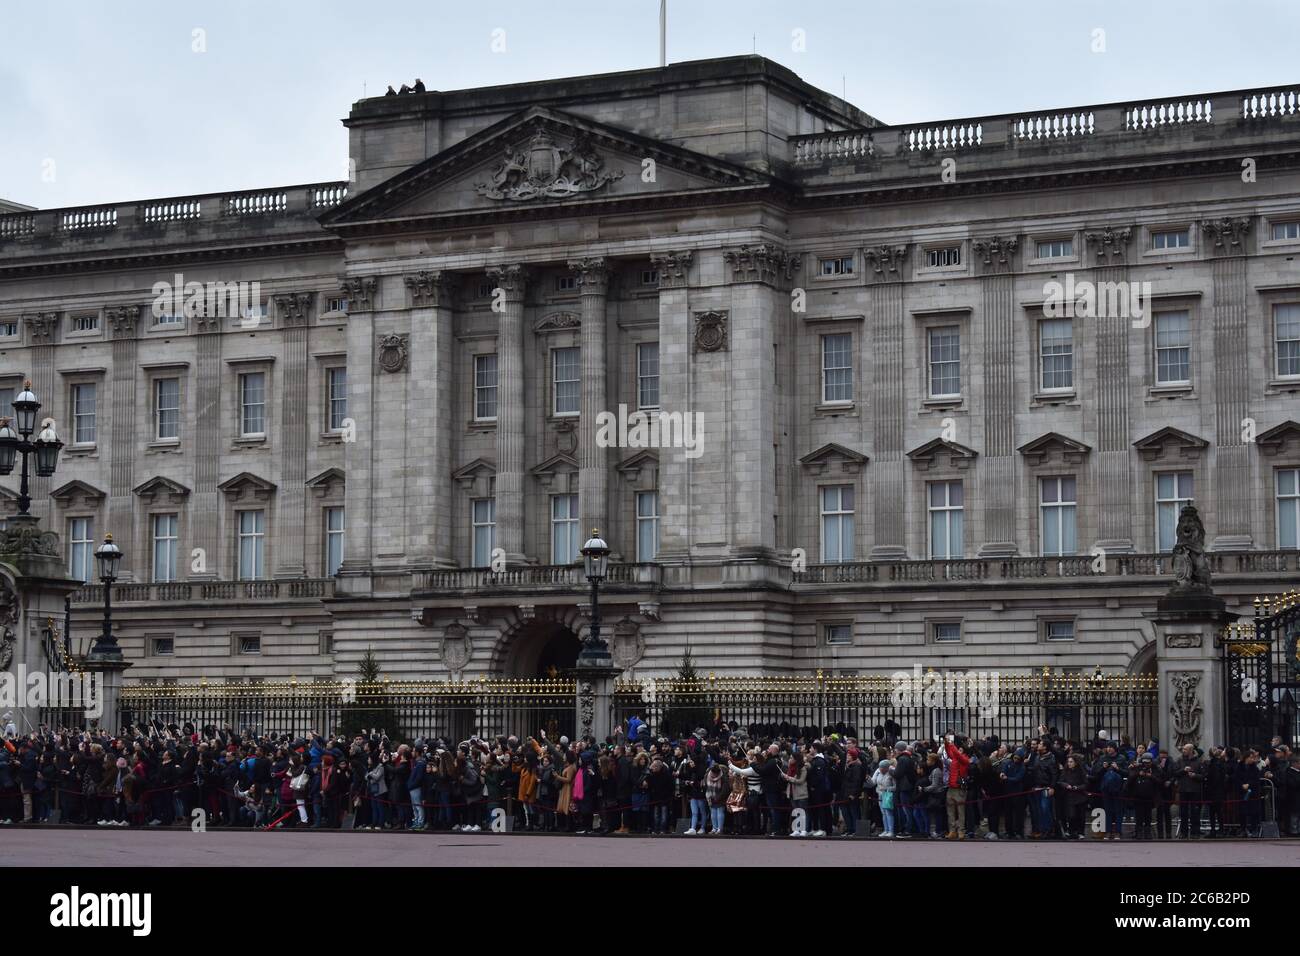 Le folle si riuniscono fuori Buckingham Palace per la cerimonia del Cambio della Guardia. L'imponente facciata est e balcone per apparizioni reali. Foto Stock